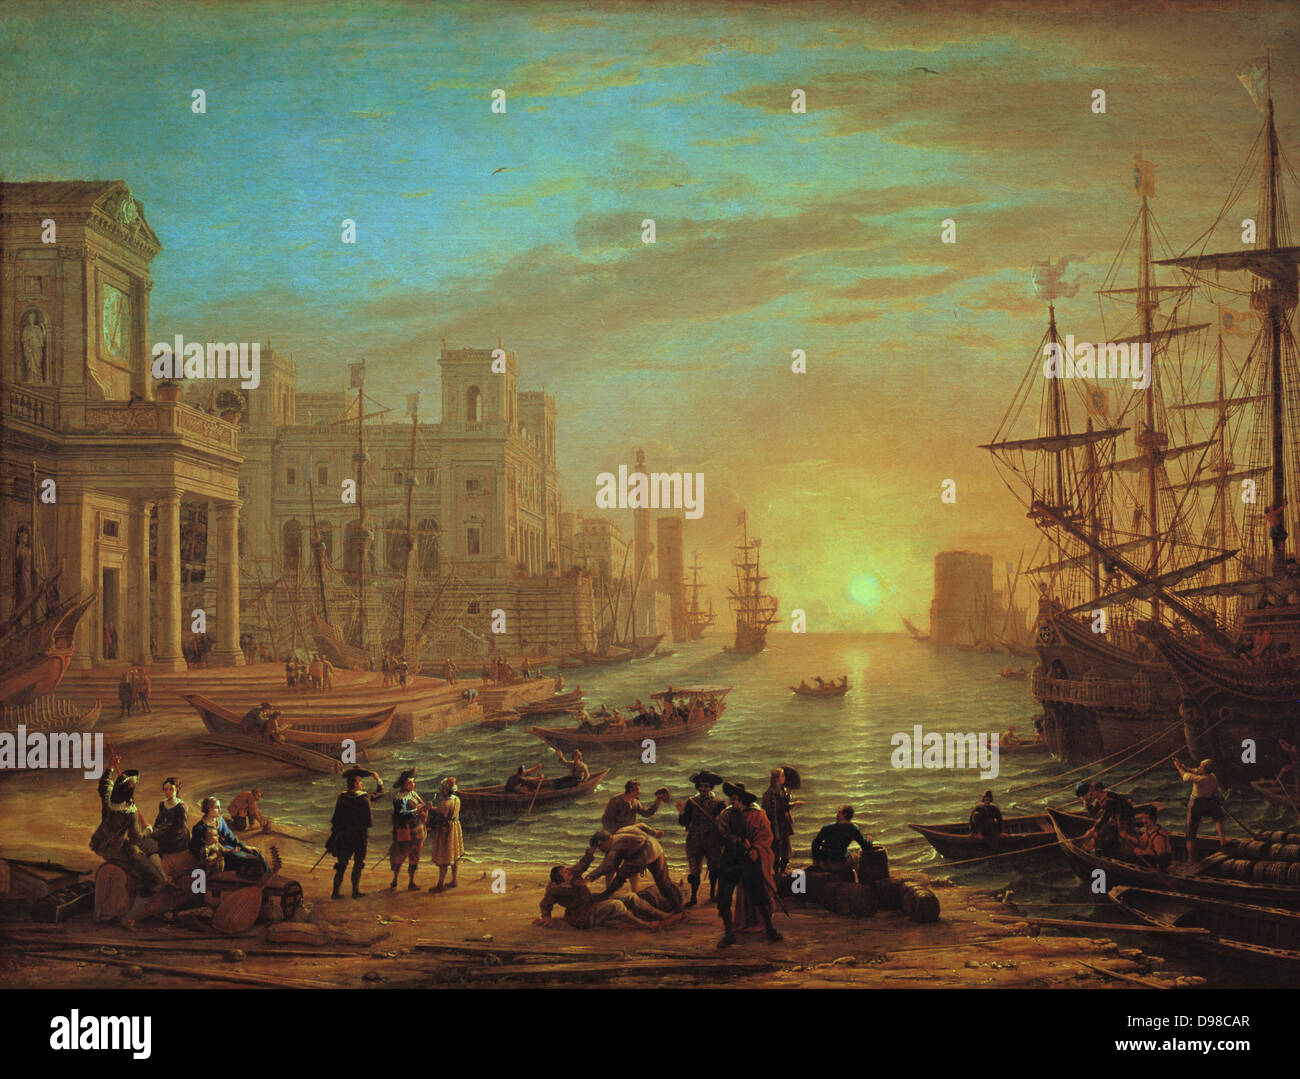 Blick auf eine Hafenstadt' oder 'seaport', 1639. Öl auf Leinwand: Claude Lorrain auch als Claude Gellee (c) 1600-1682 Französische Maler in Italien tätig. Idealisierte Ansicht eines Hafens am Abend. Stockfoto